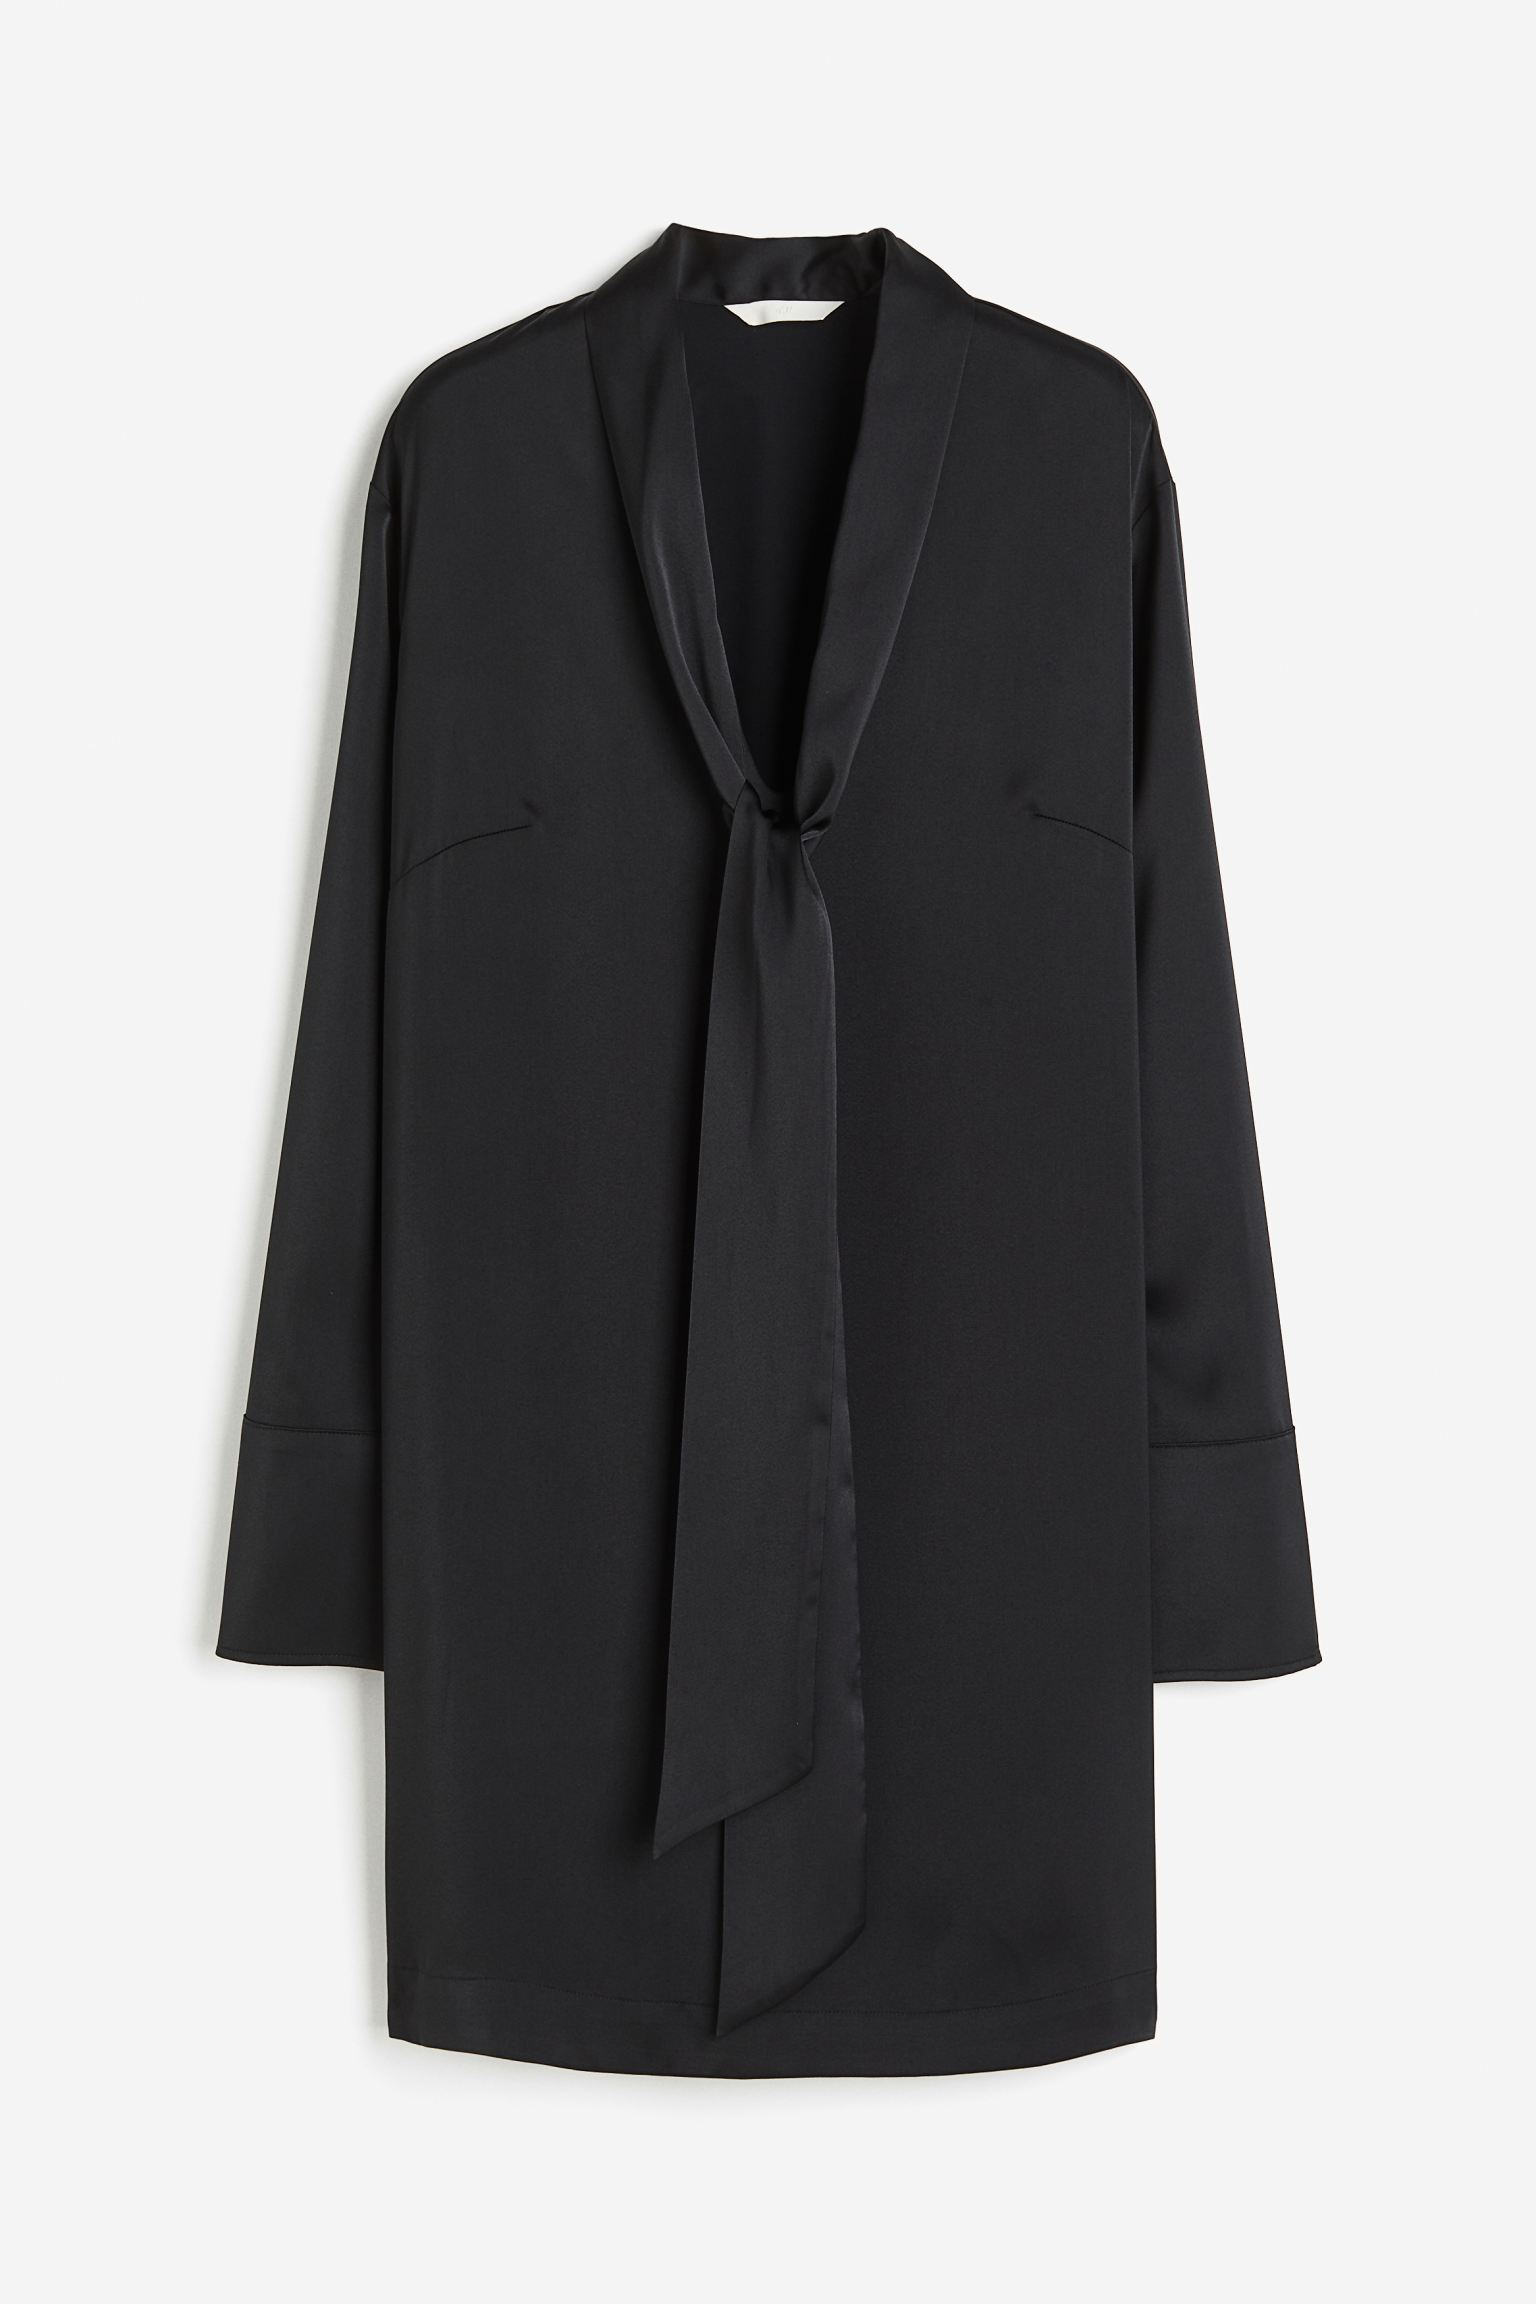 Платье H&M Tie-detail Satin, черный платье короткое v образный вырез короткие рукава 40 черный